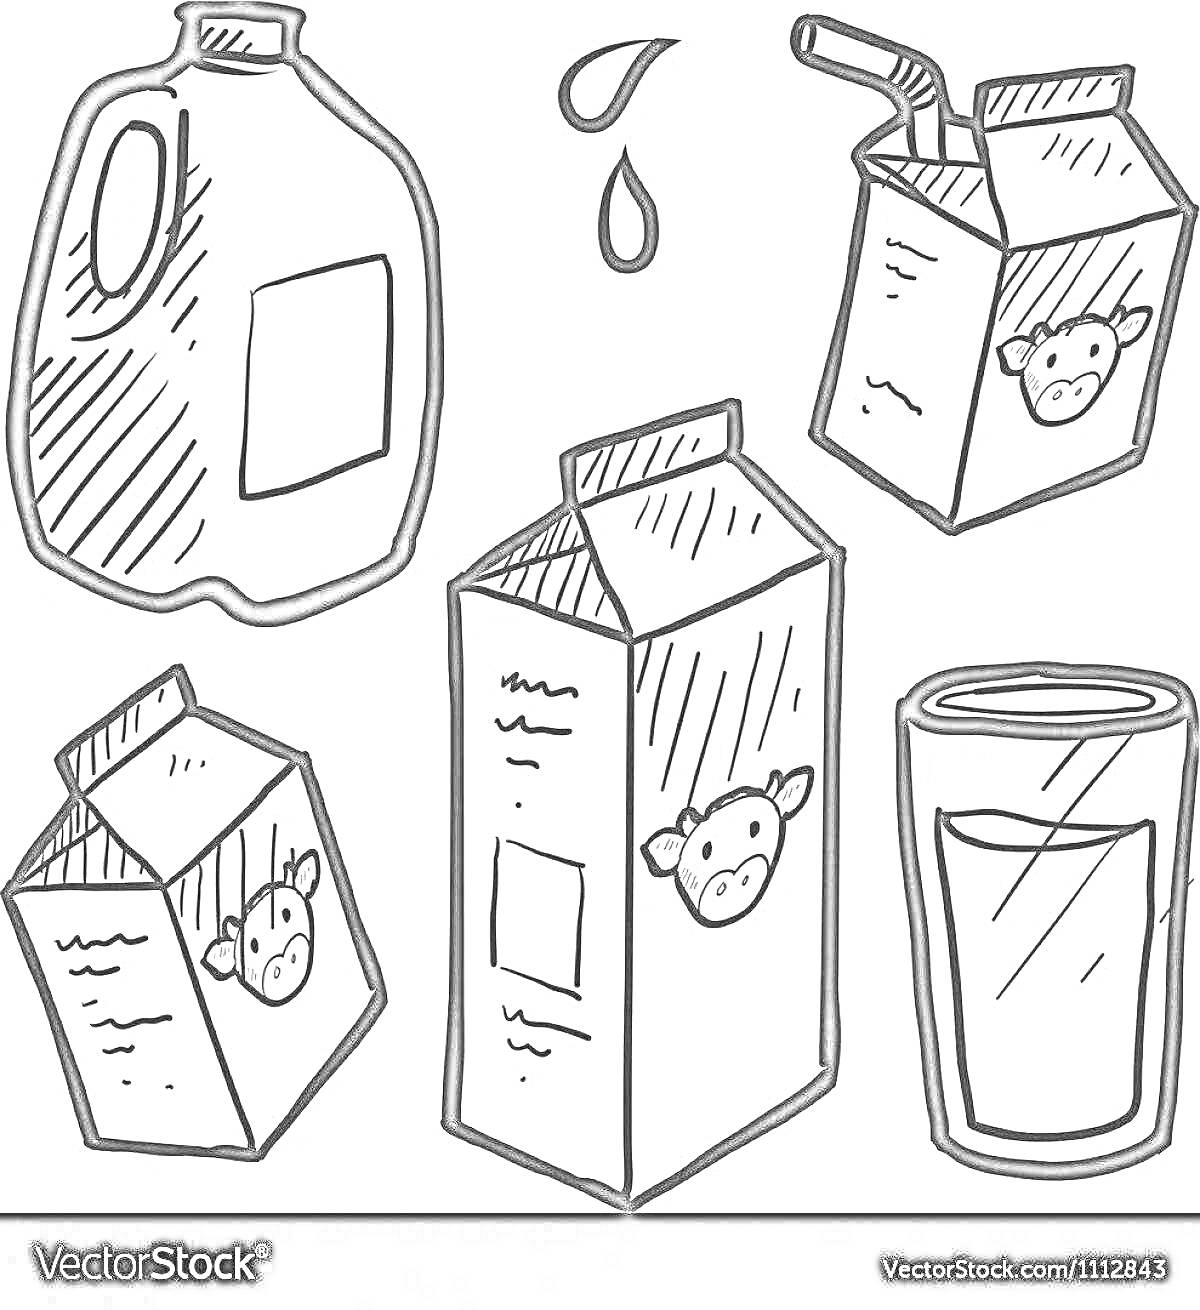 Раскраска Упаковка для молочных продуктов с молоком в разных контейнерах, капли молока и стакан молока